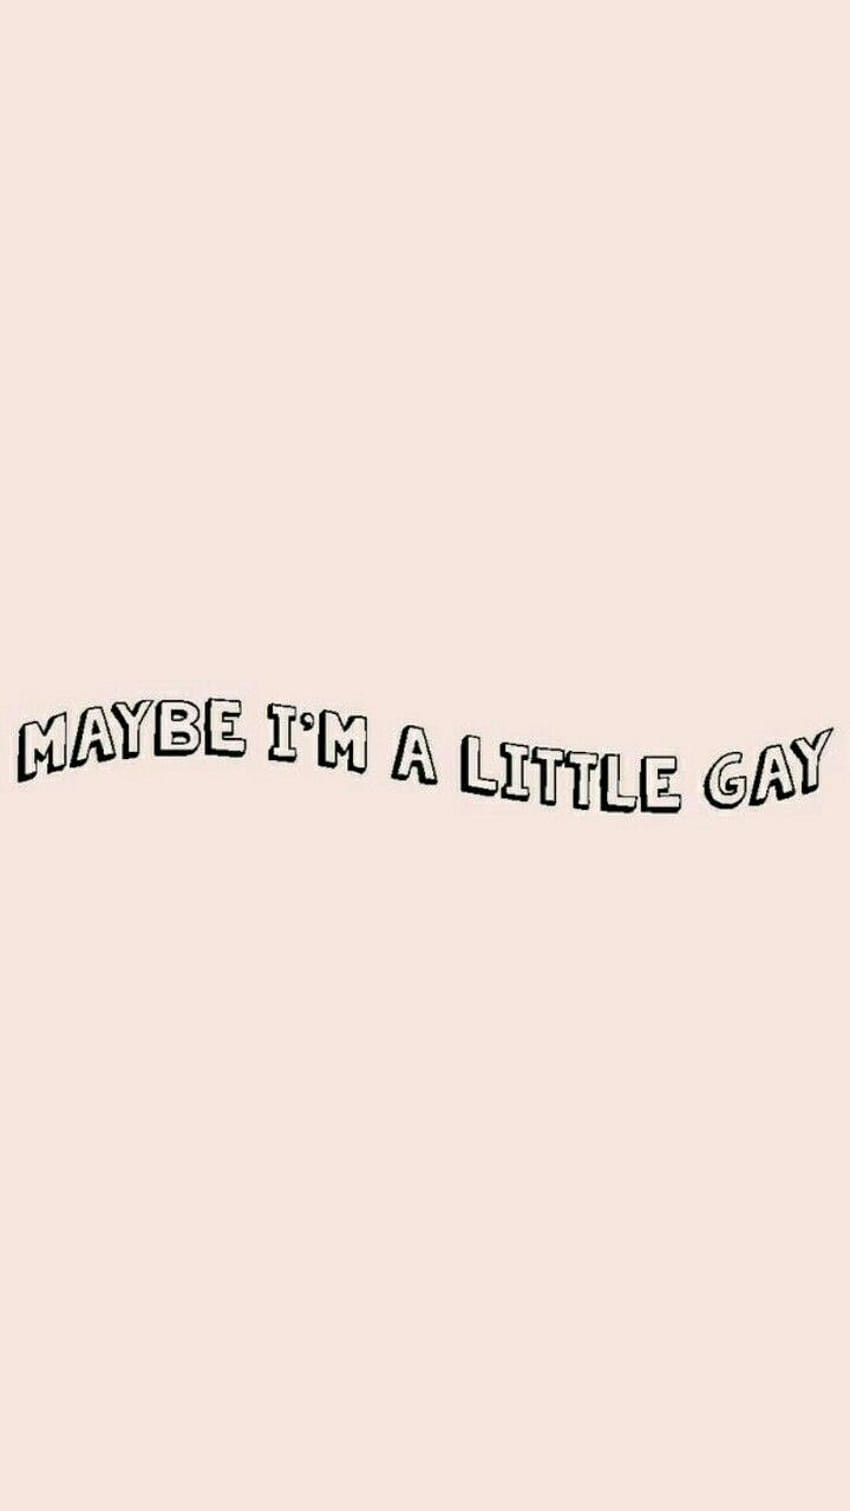 Maybe im a little gay - Lesbian